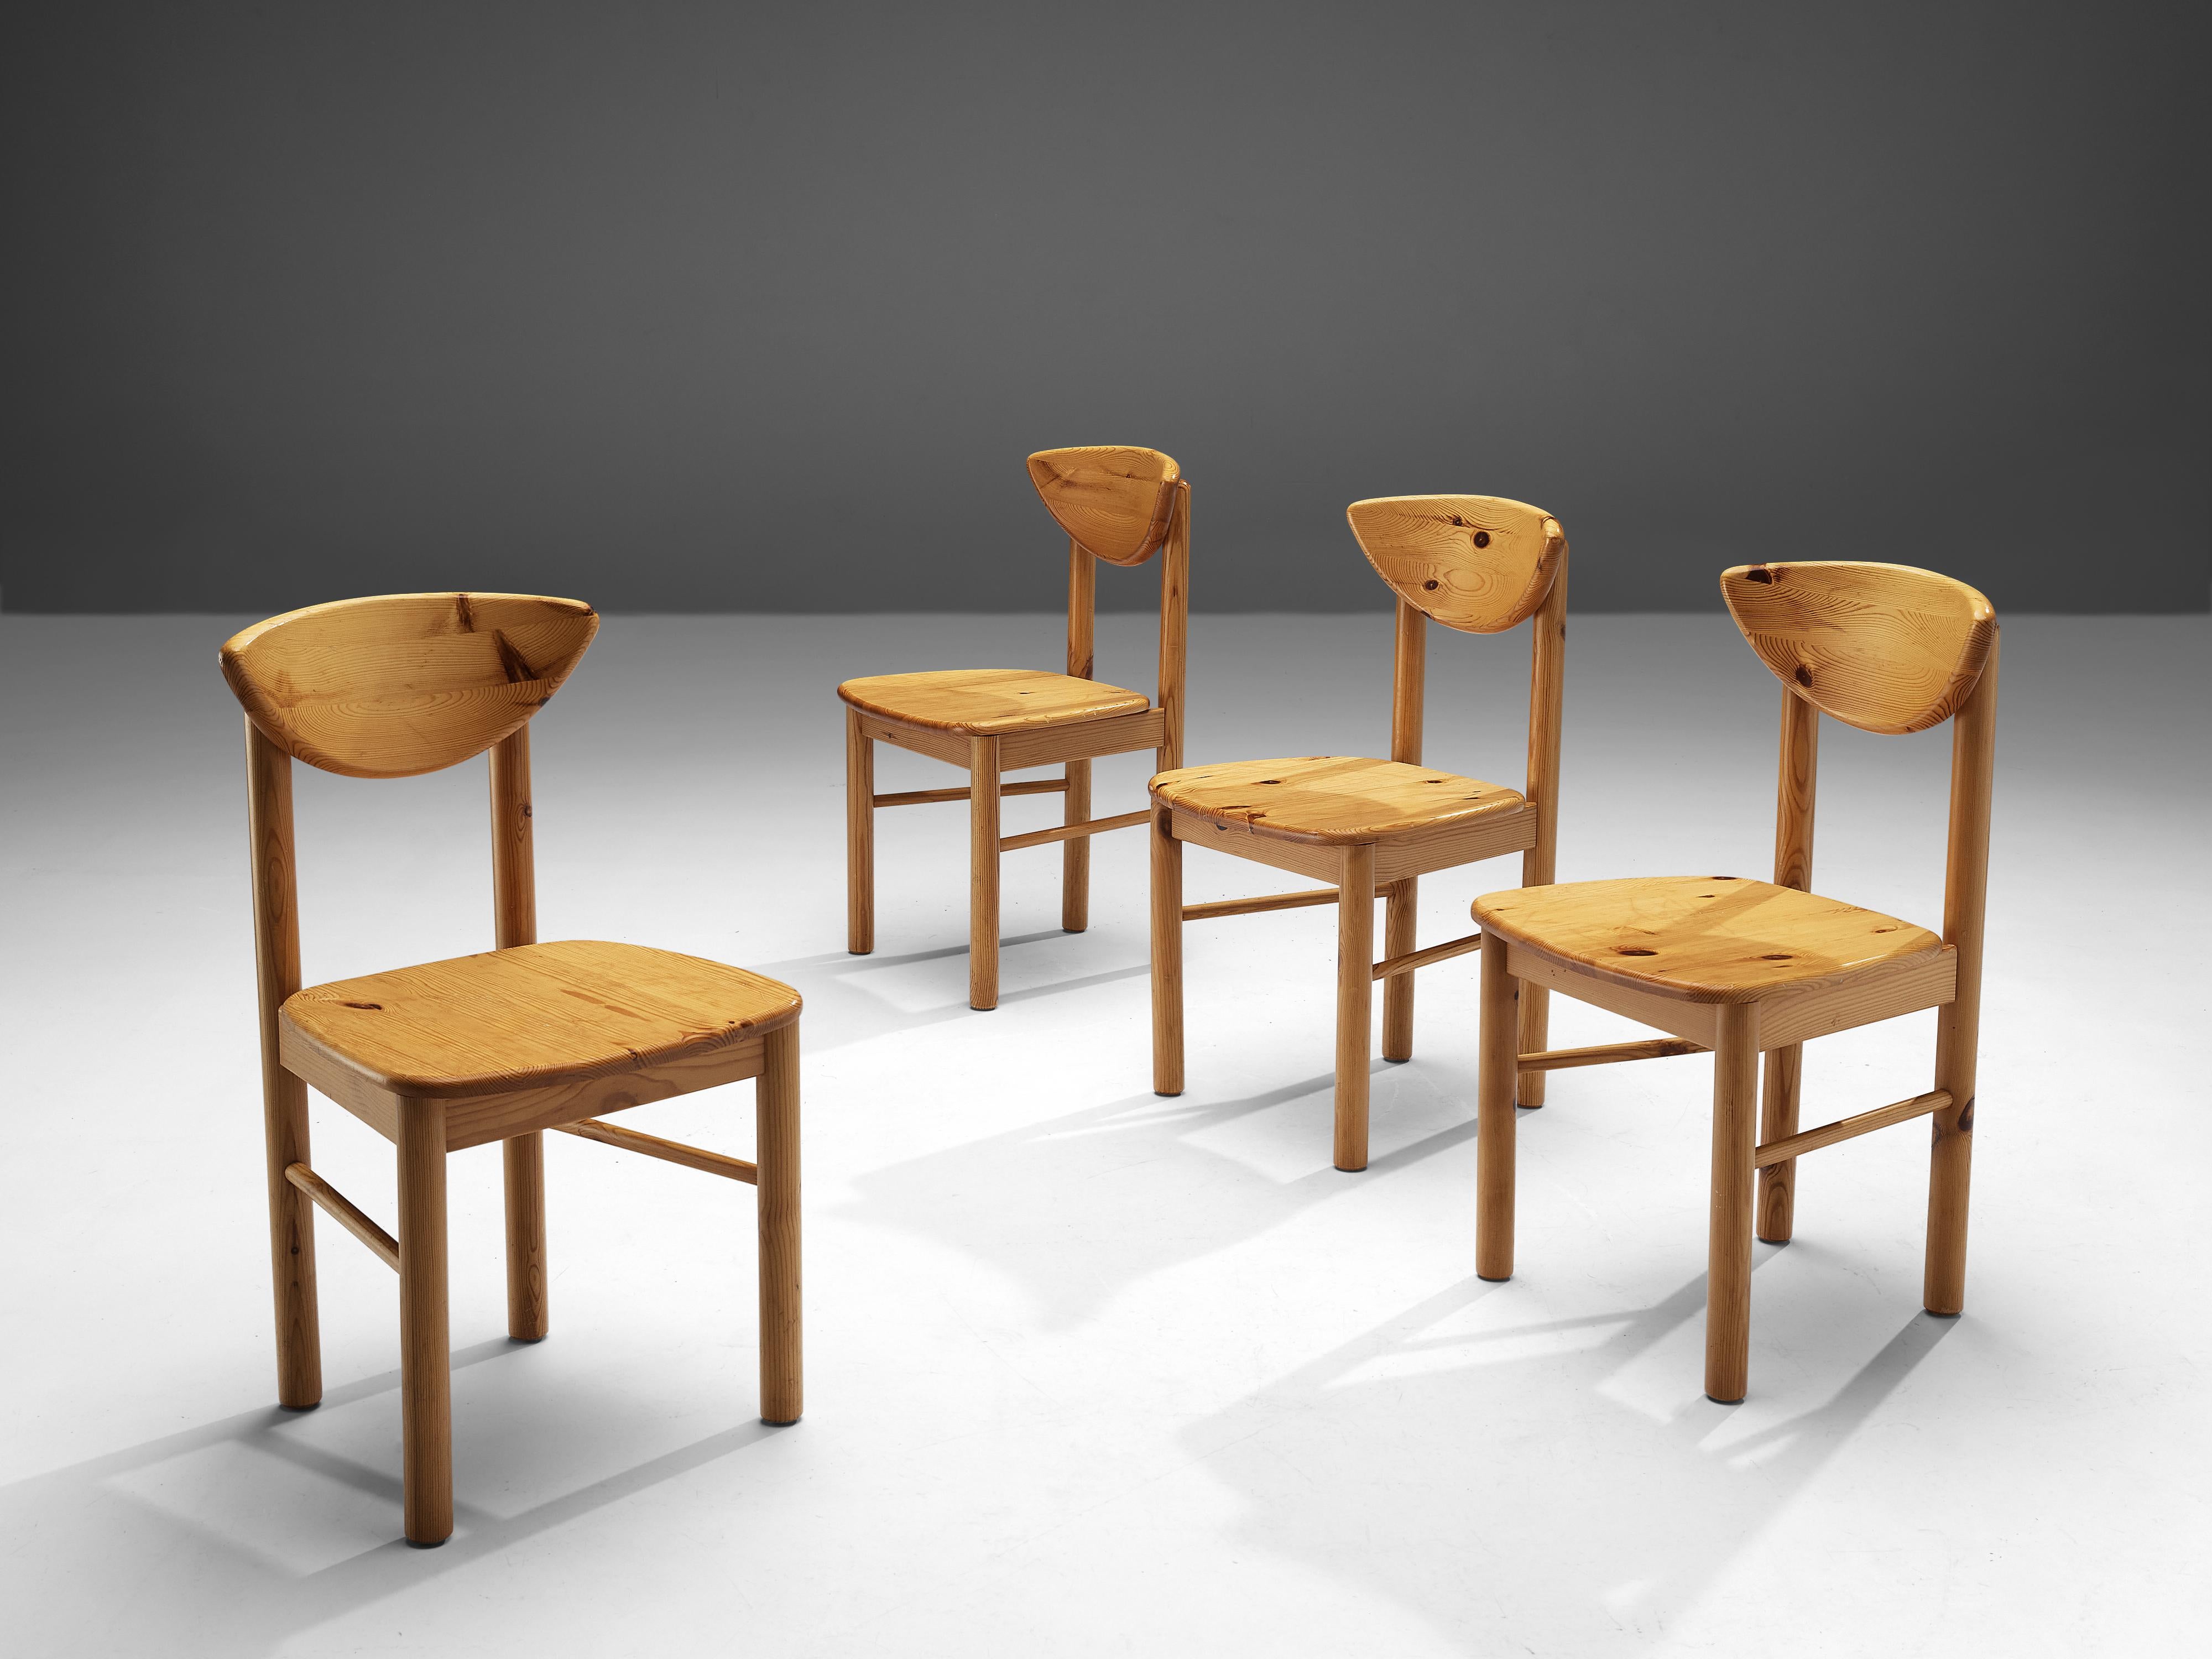 Rainer Daumiller, chaises de salle à manger, pin, Danemark, 1970

Magnifique ensemble de fauteuils organiques et naturels en pin massif. Un joli design qui met en valeur l'expression naturelle et le grain du bois. Les chaises sont très confortables